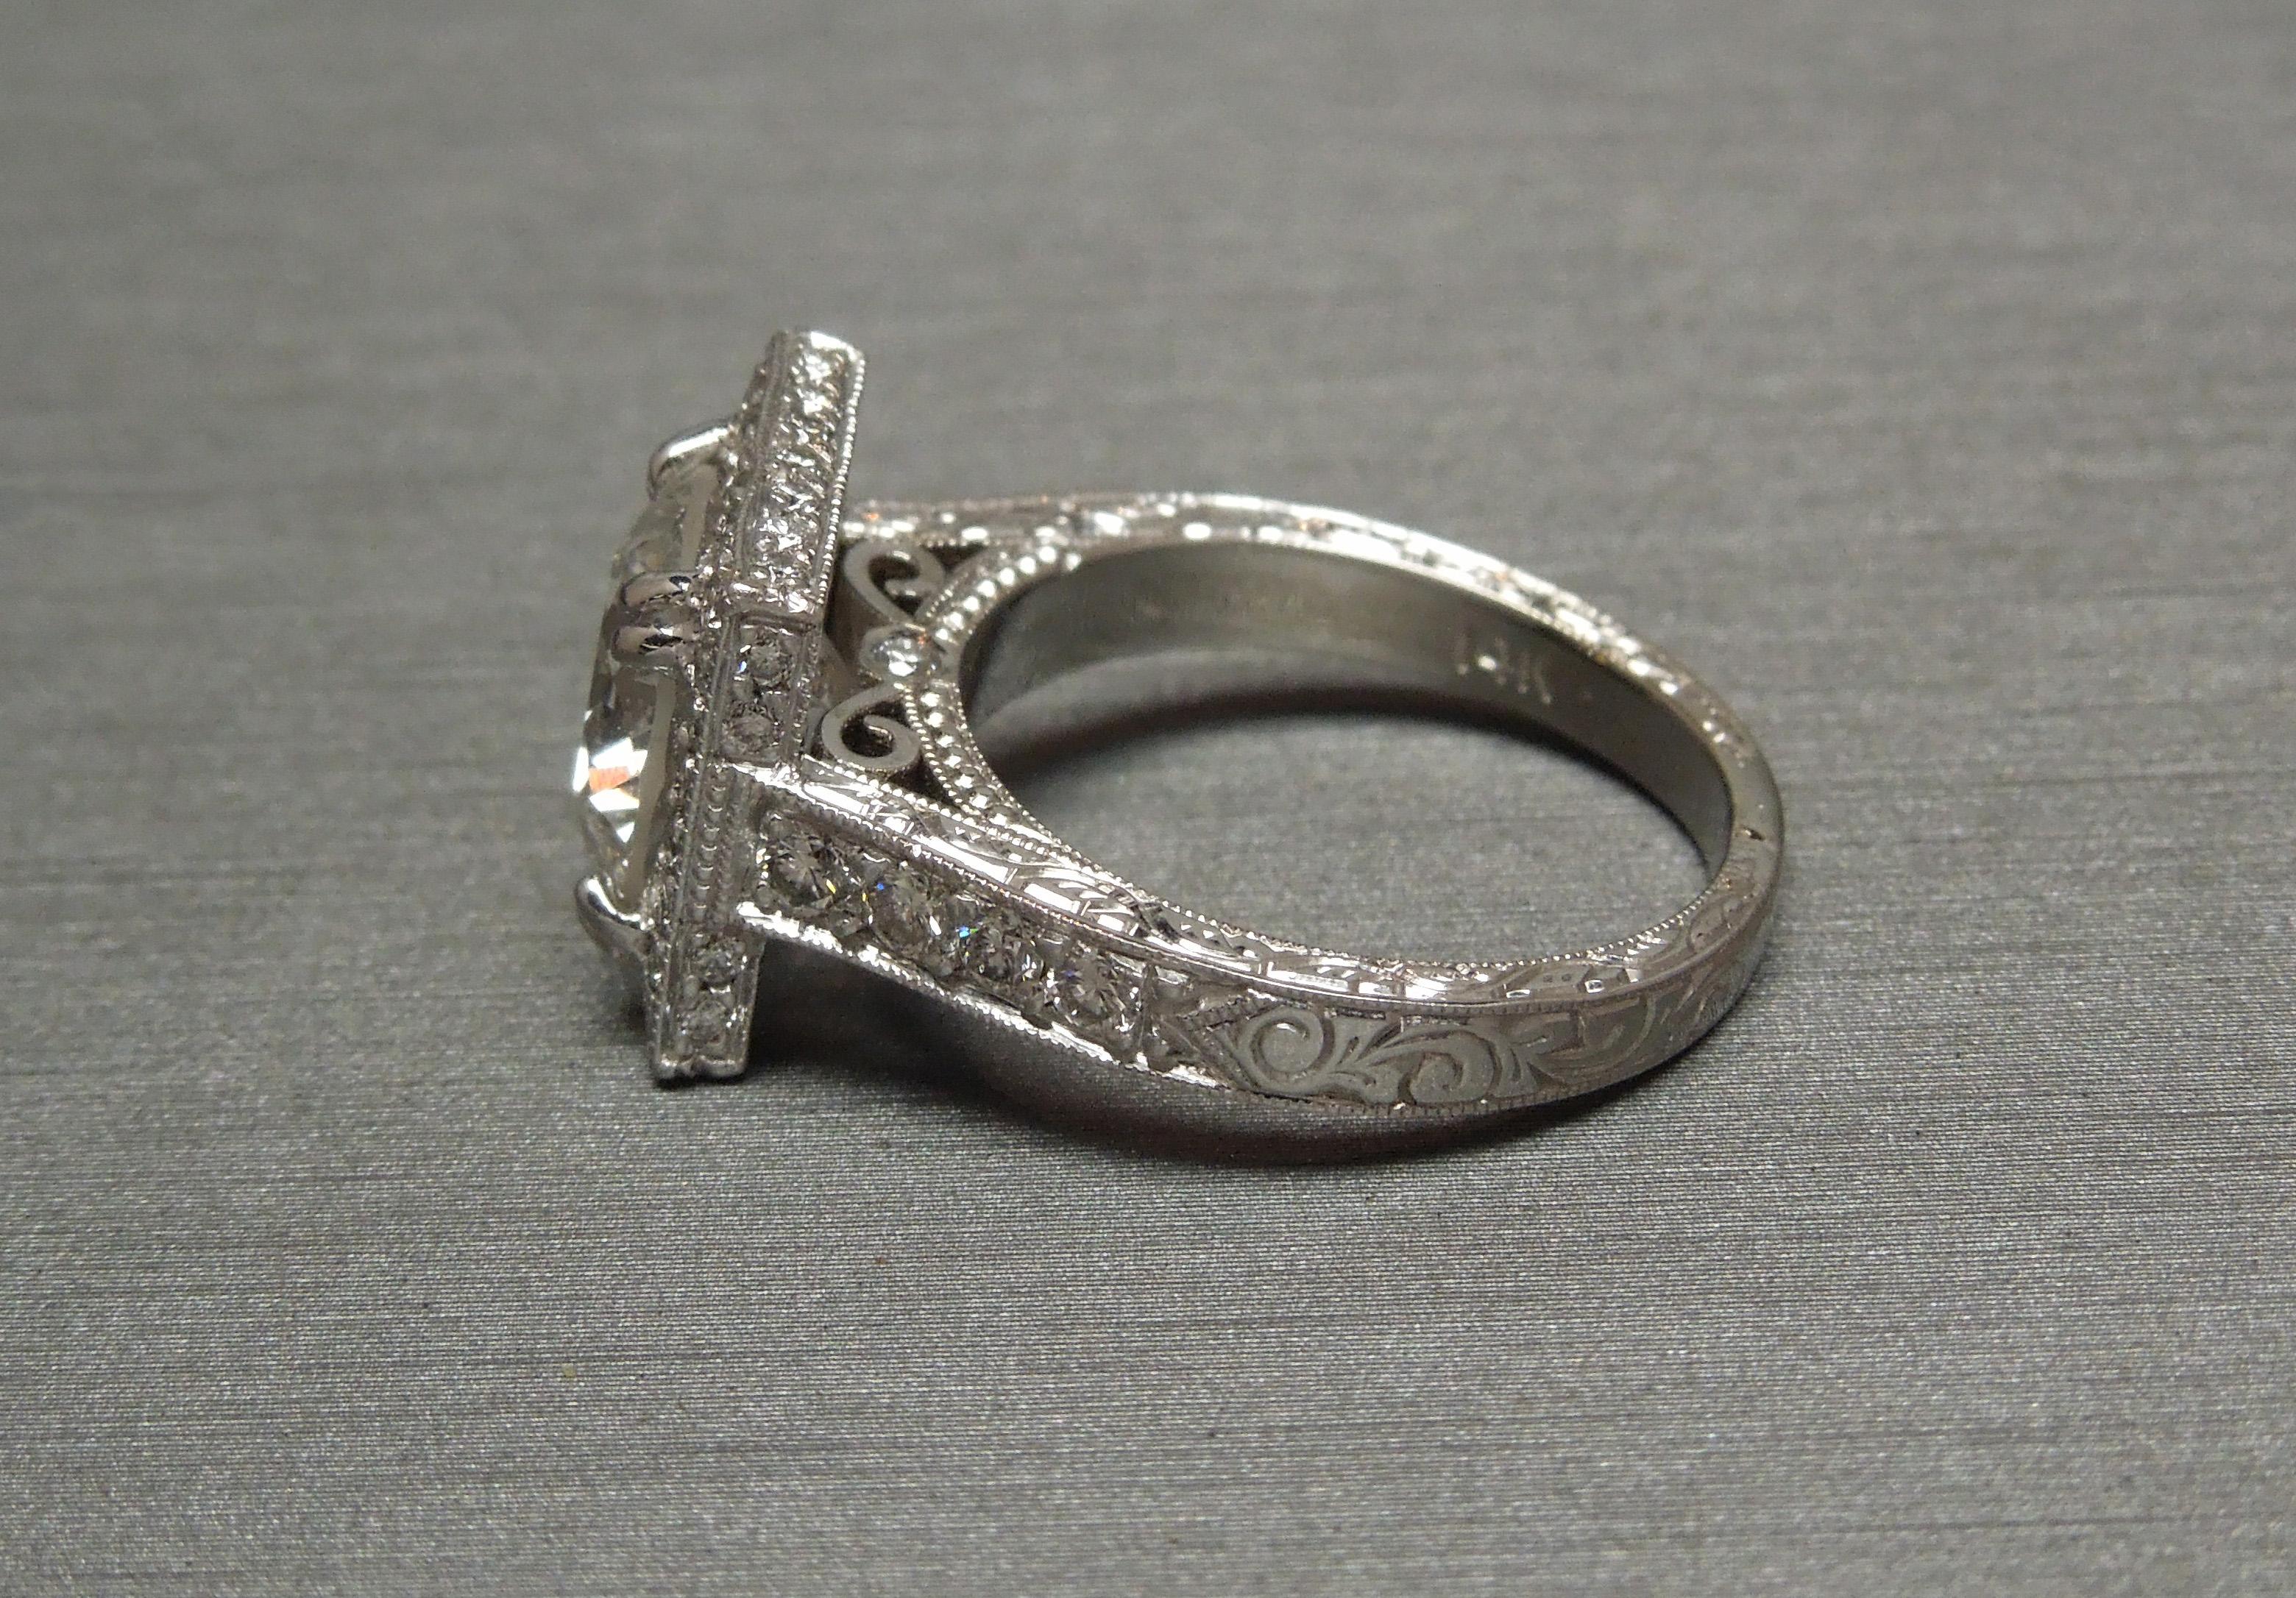 Dieser runde Diamant Solitär Halo Ring verfügt über eine unglaublich weiß GIA zertifiziert zentralen 3,22 Karat (E Farbe; I2 Klarheit) Brillantschliff Diamant. Obwohl er als I2 Clarity eingestuft ist, übertrifft die Brillanz diese Einstufung als